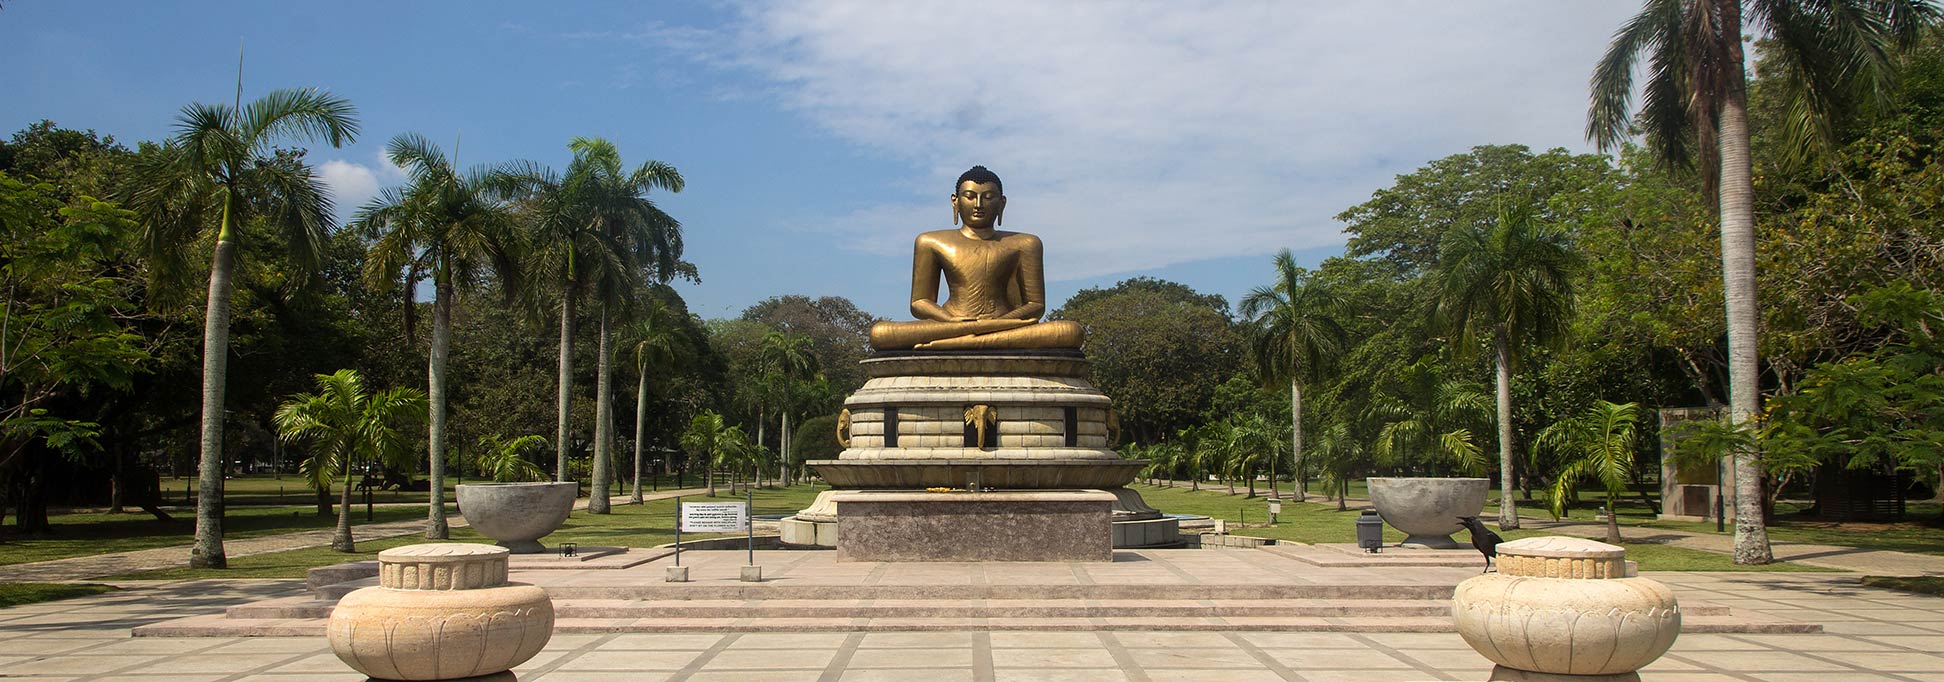 Buddha statue in Viharamahadevi Park in Colombo, Sri Lanka.